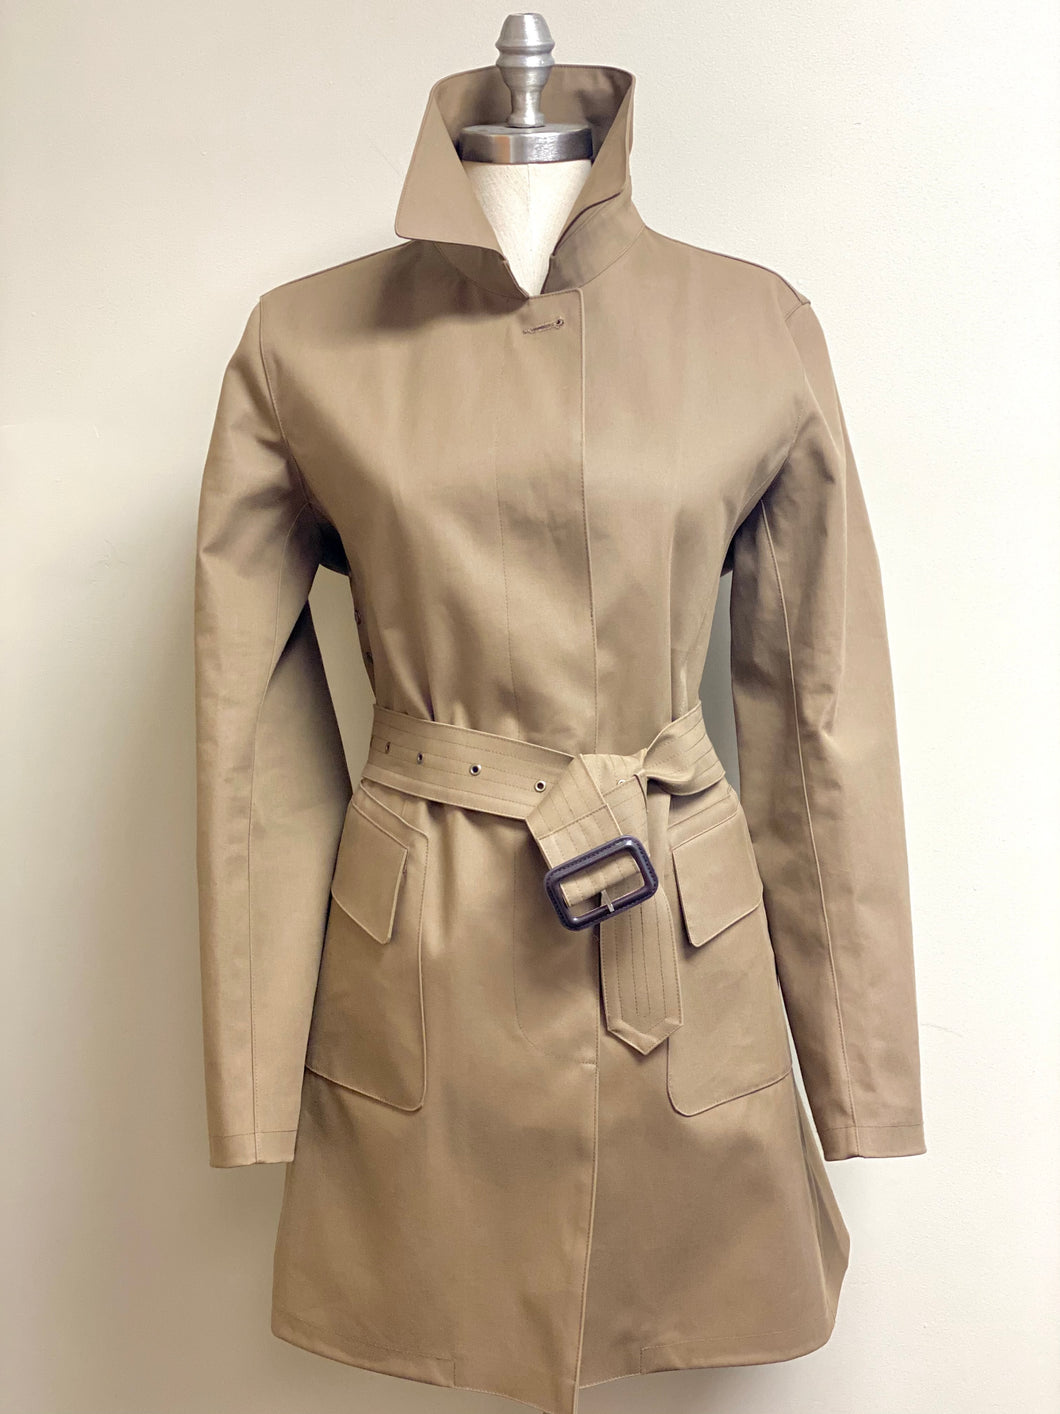 Mackintosh women's raincoat in tan. 